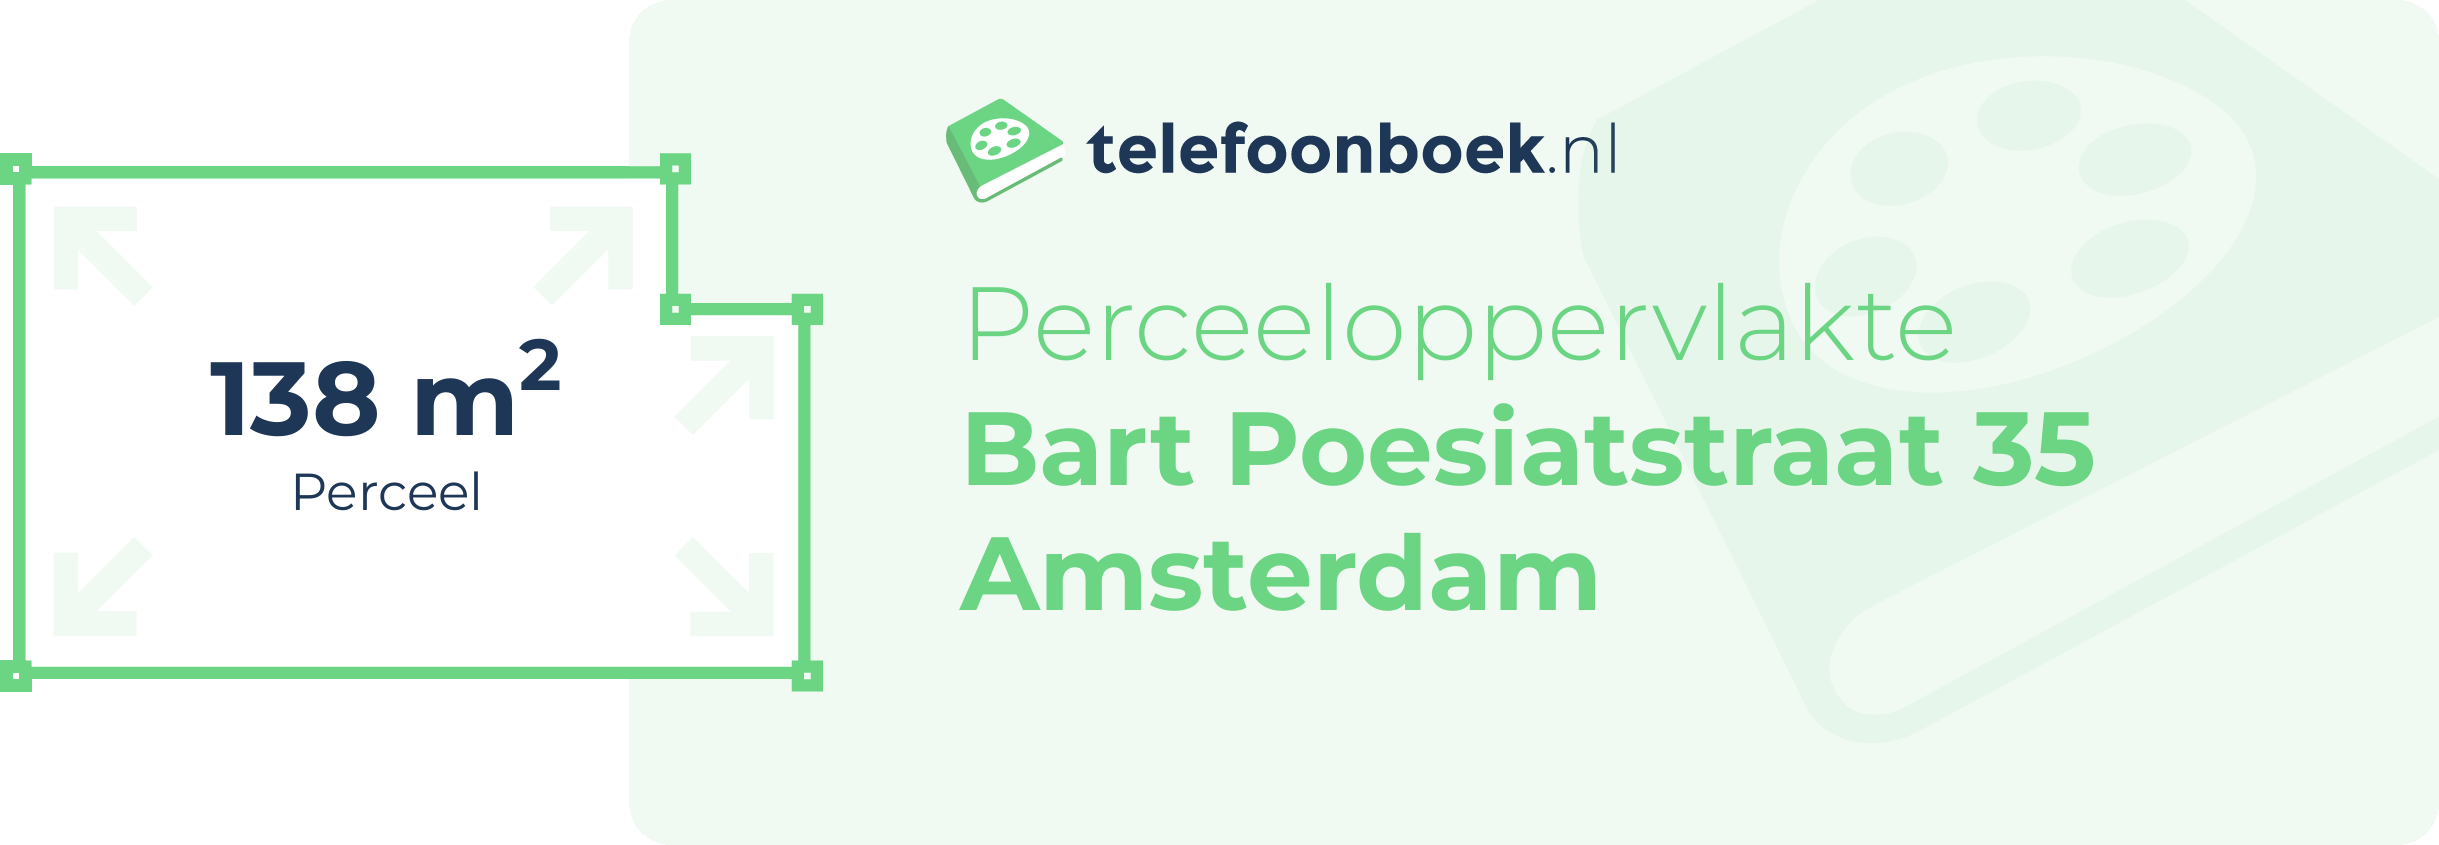 Perceeloppervlakte Bart Poesiatstraat 35 Amsterdam